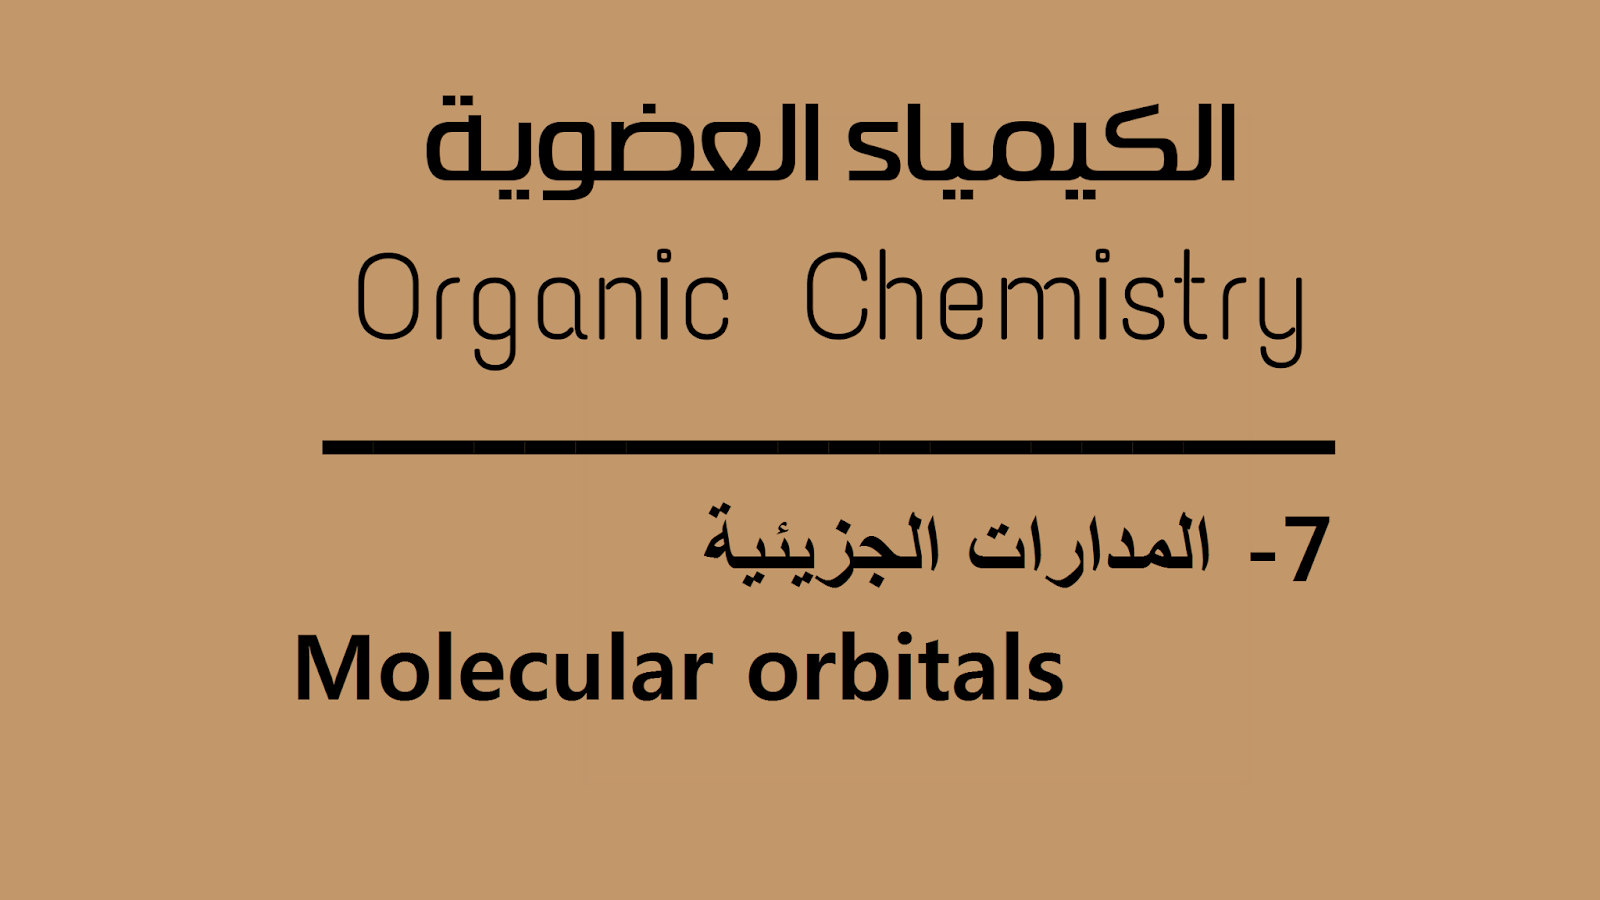 المدارات الجزيئية  -   Molecular orbitals